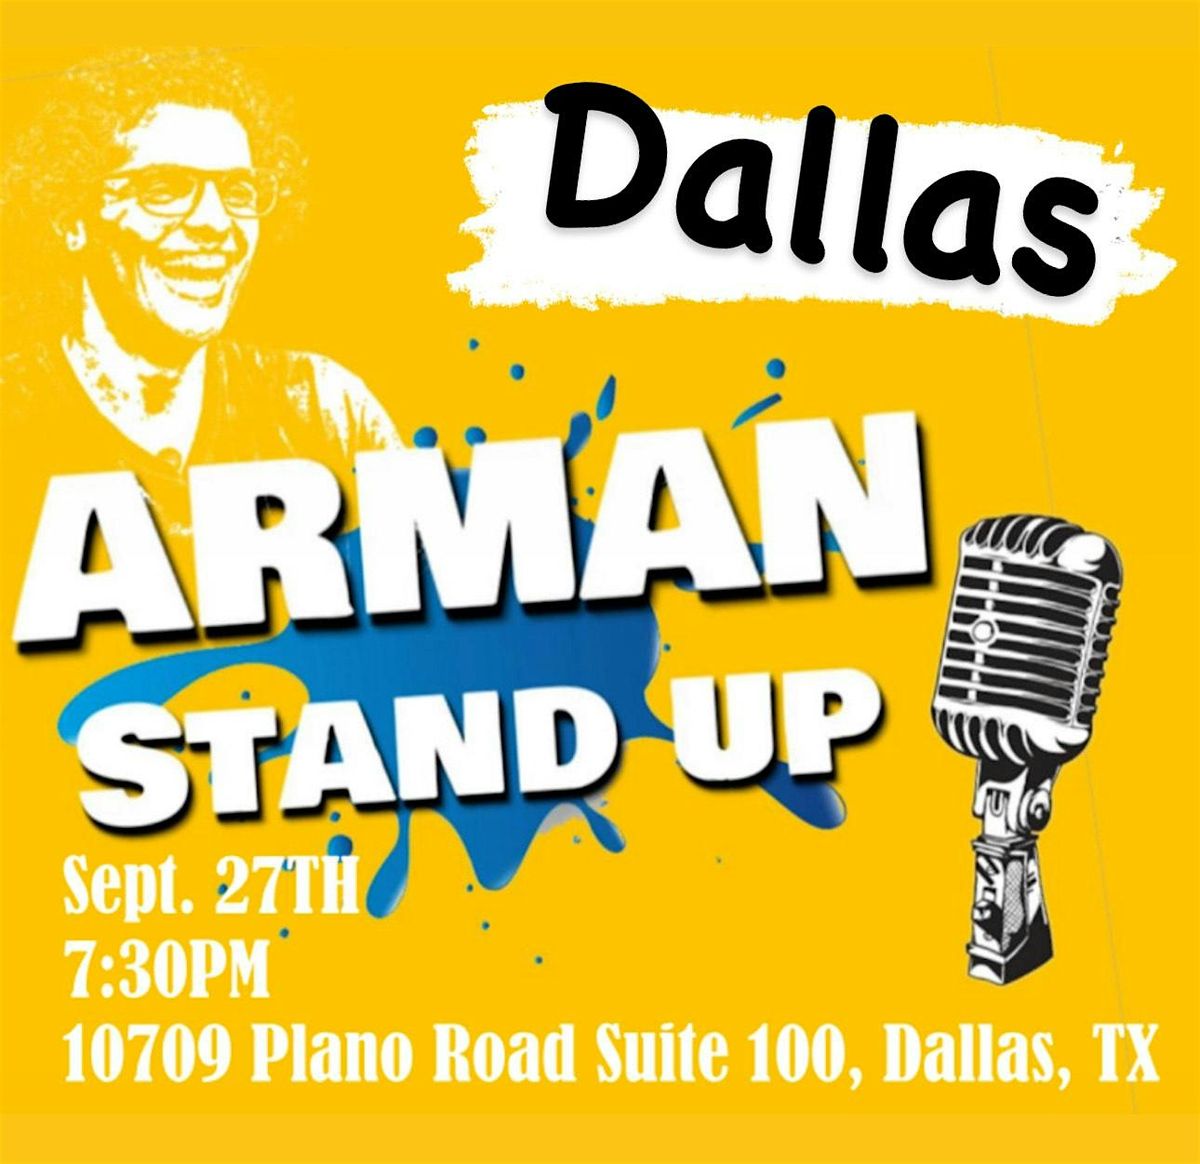 Dallas - Farsi Standup Comedy Show by ARMAN